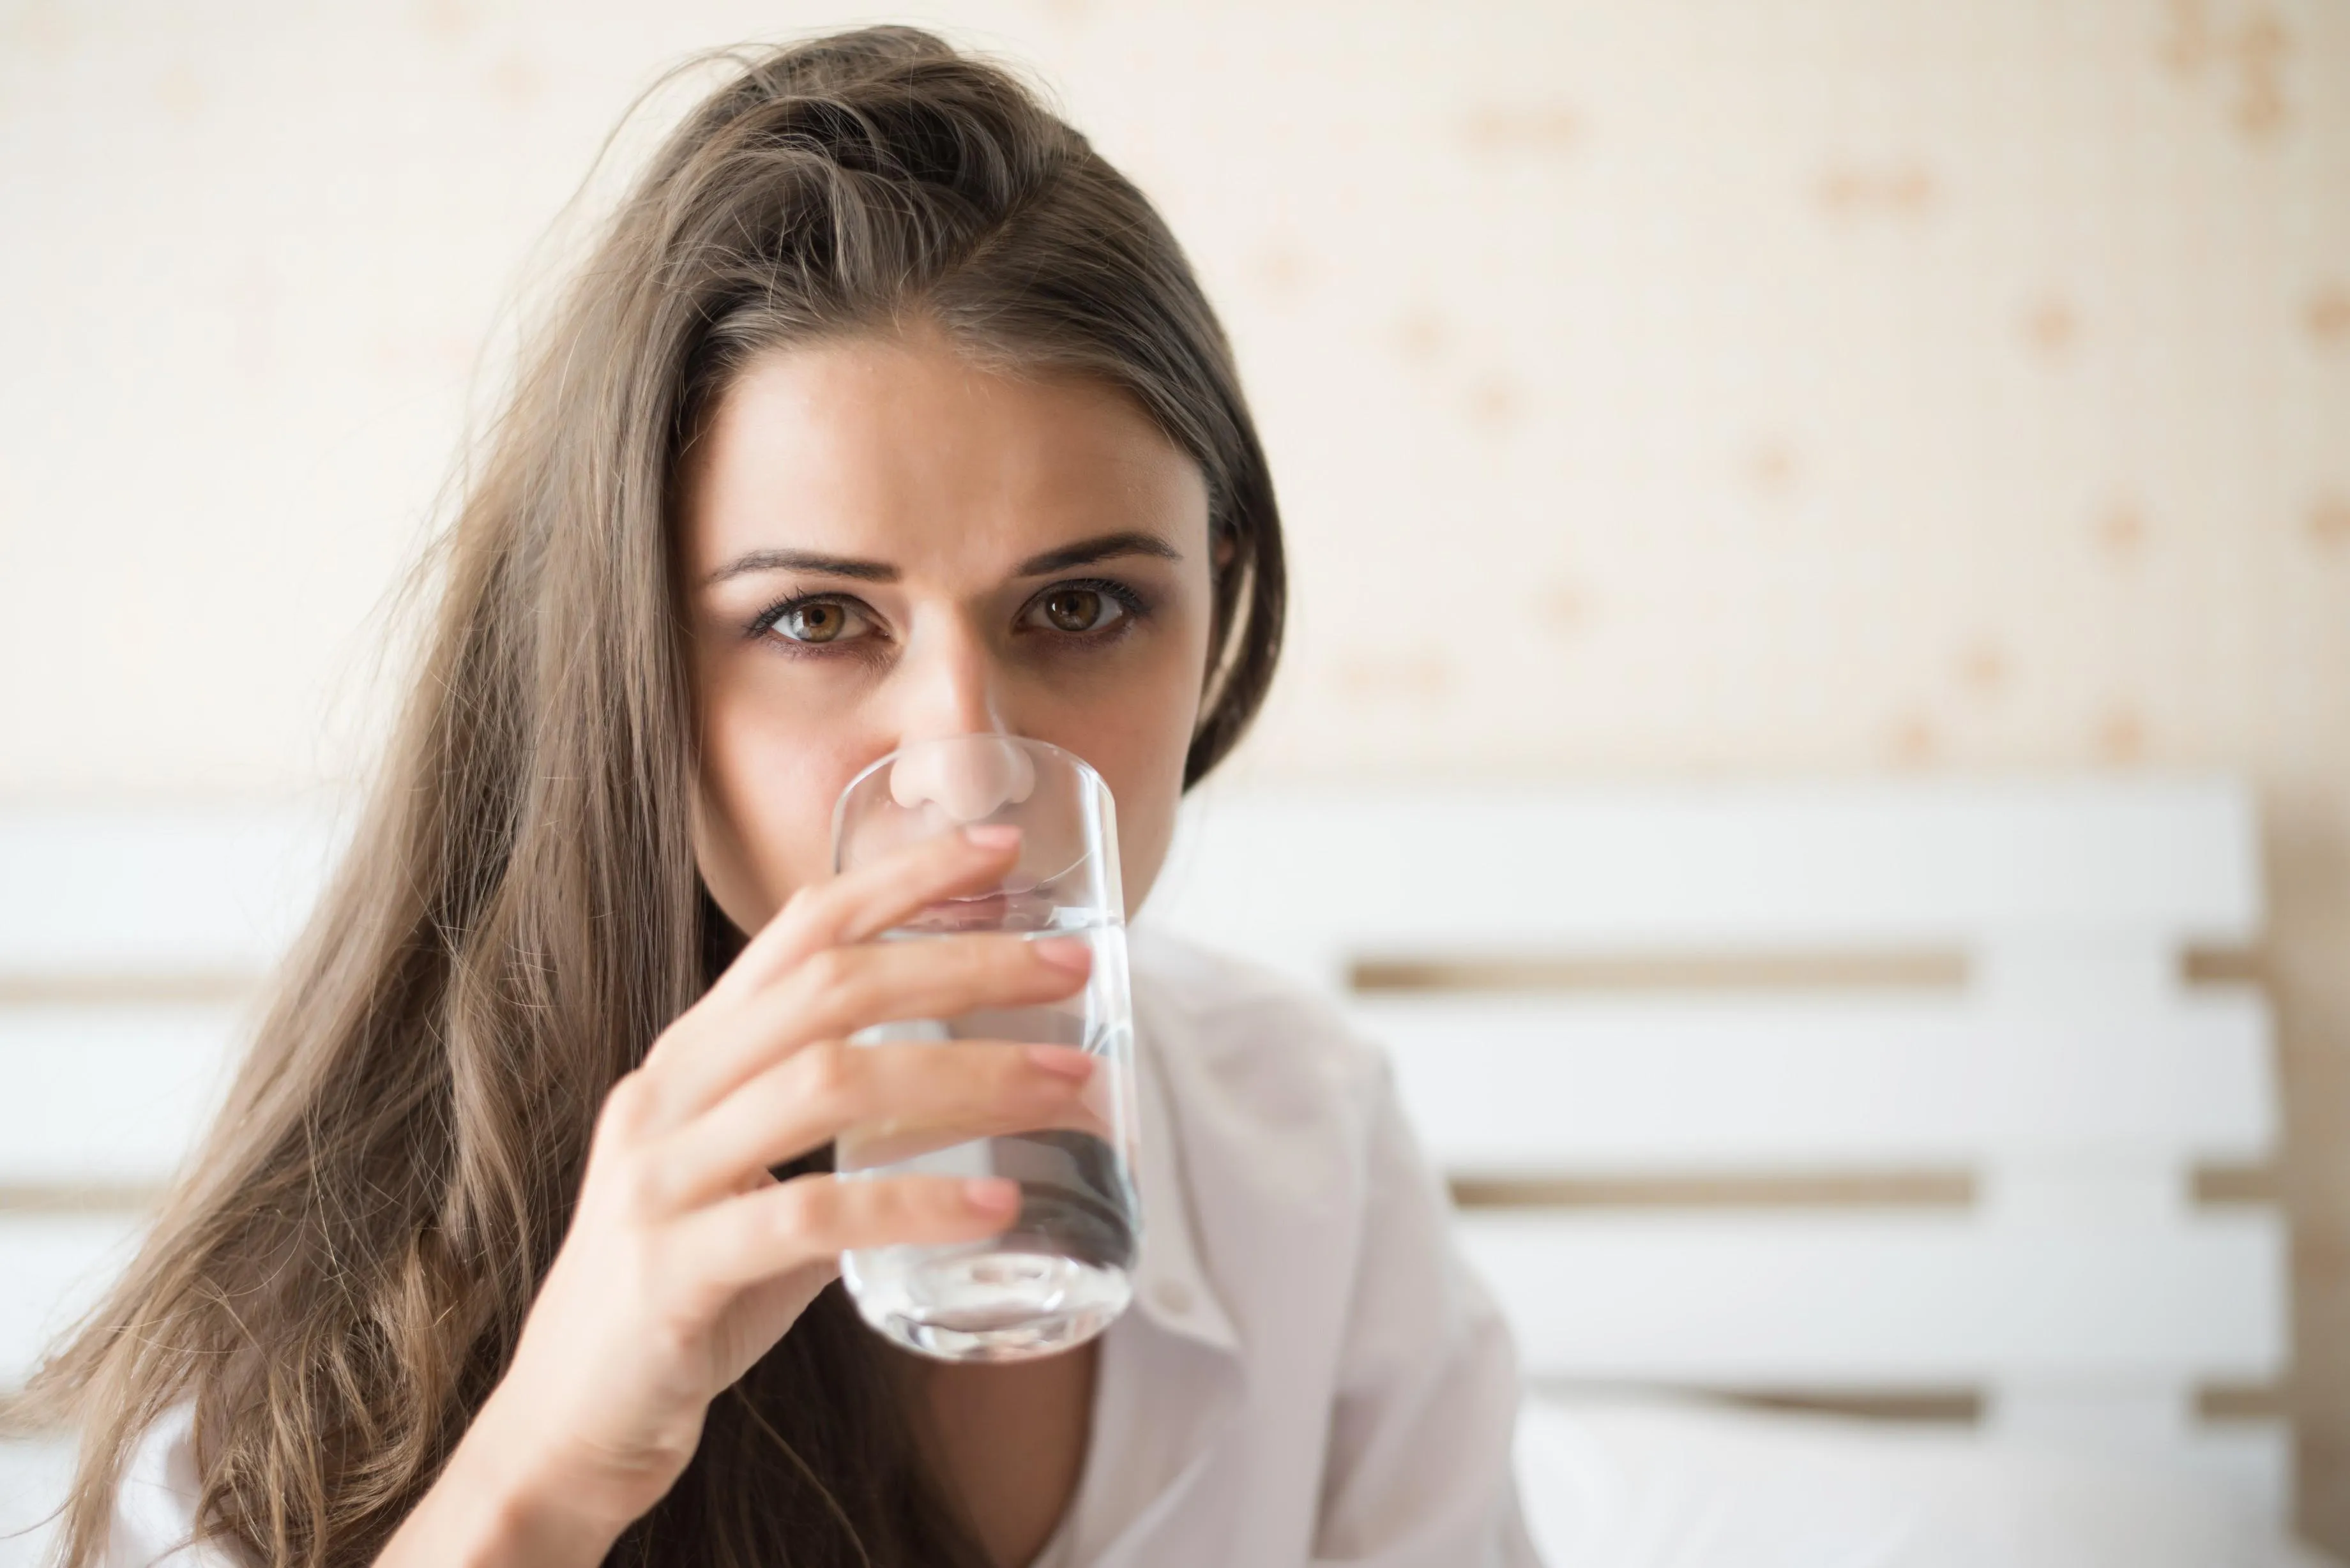 Sarurile pentru Rehidratare Orala: O solutie eficienta pentru deshidratare si restabilirea echilibrului hidroelectrolitic